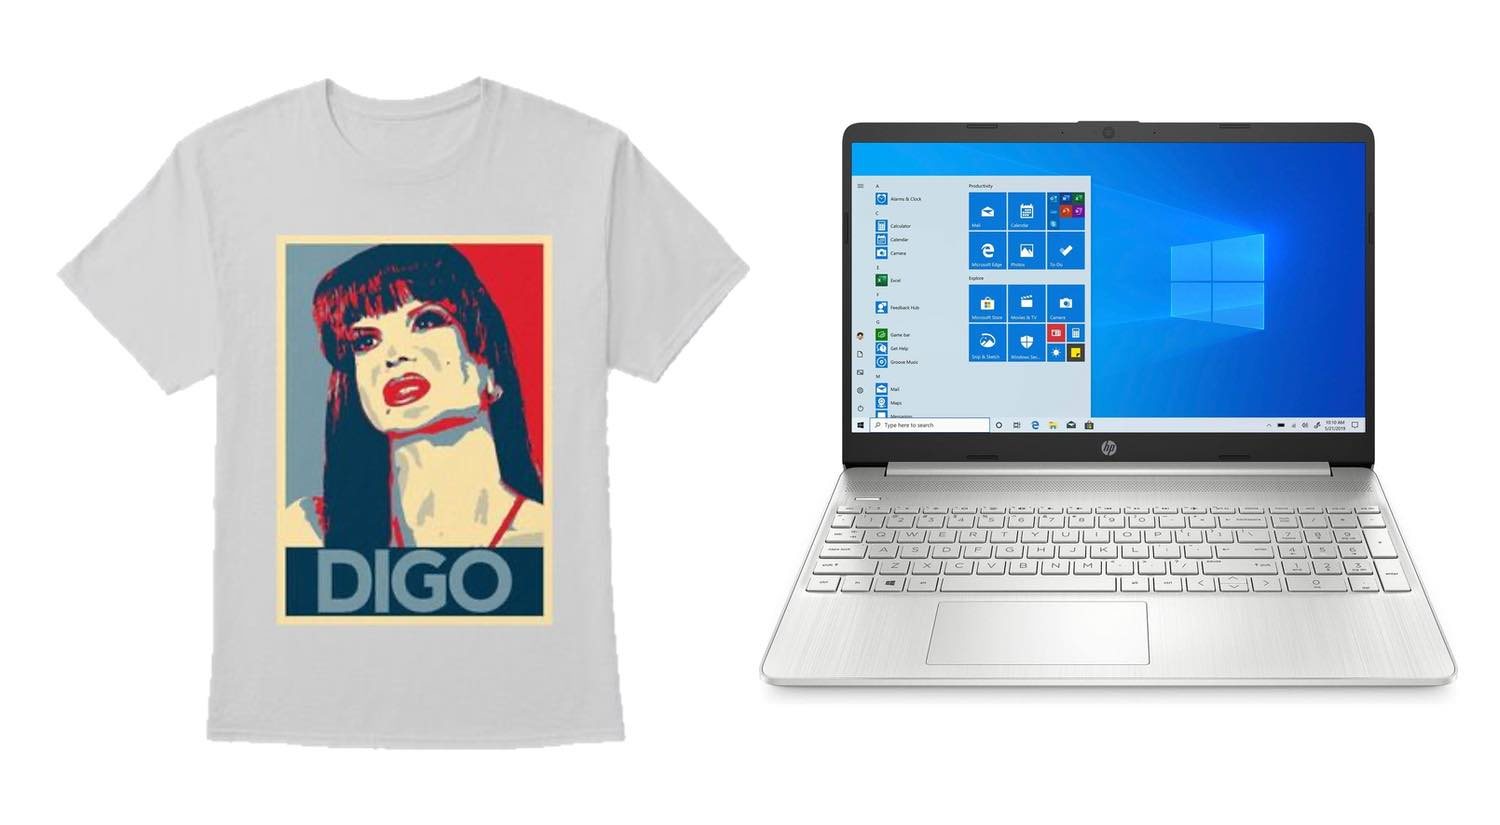 Camiseta 'Veneno' y ordenador portátil HP